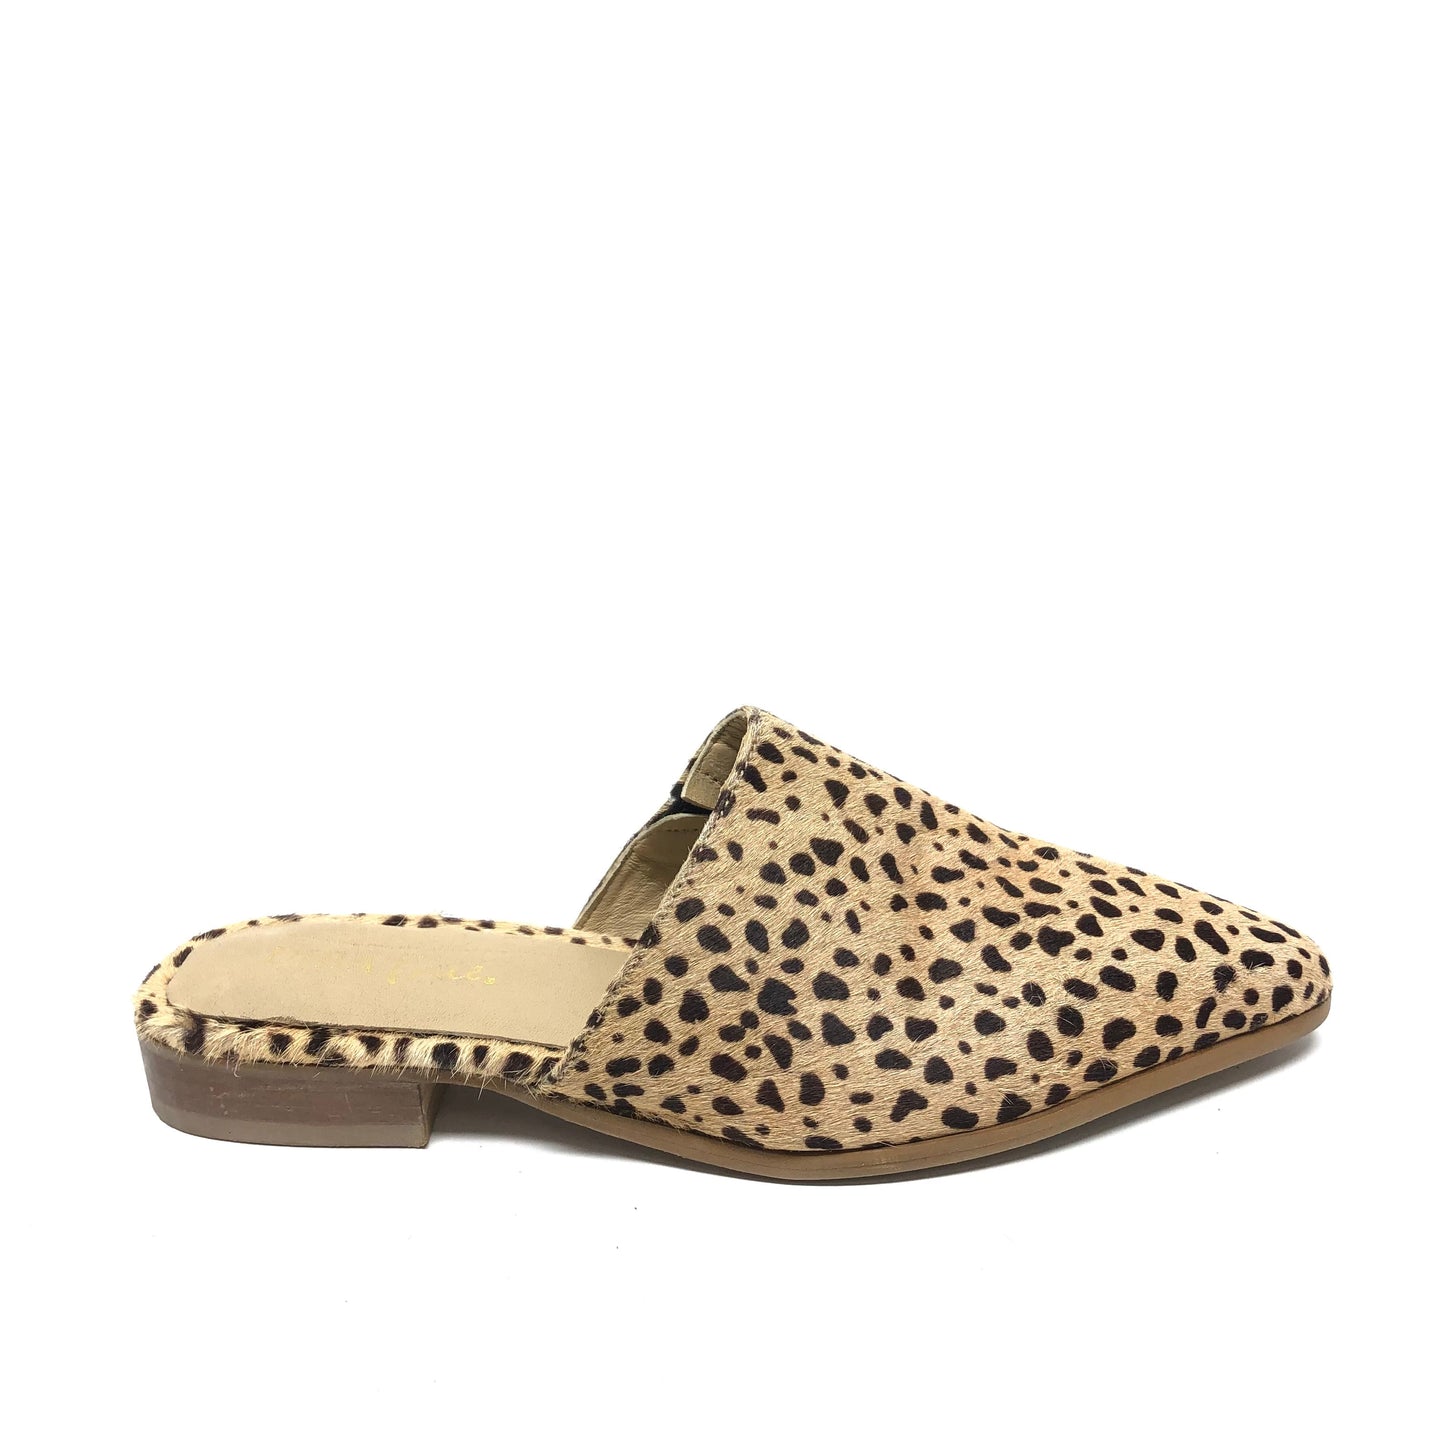 Animal Print Shoes Flats Diba, Size 9